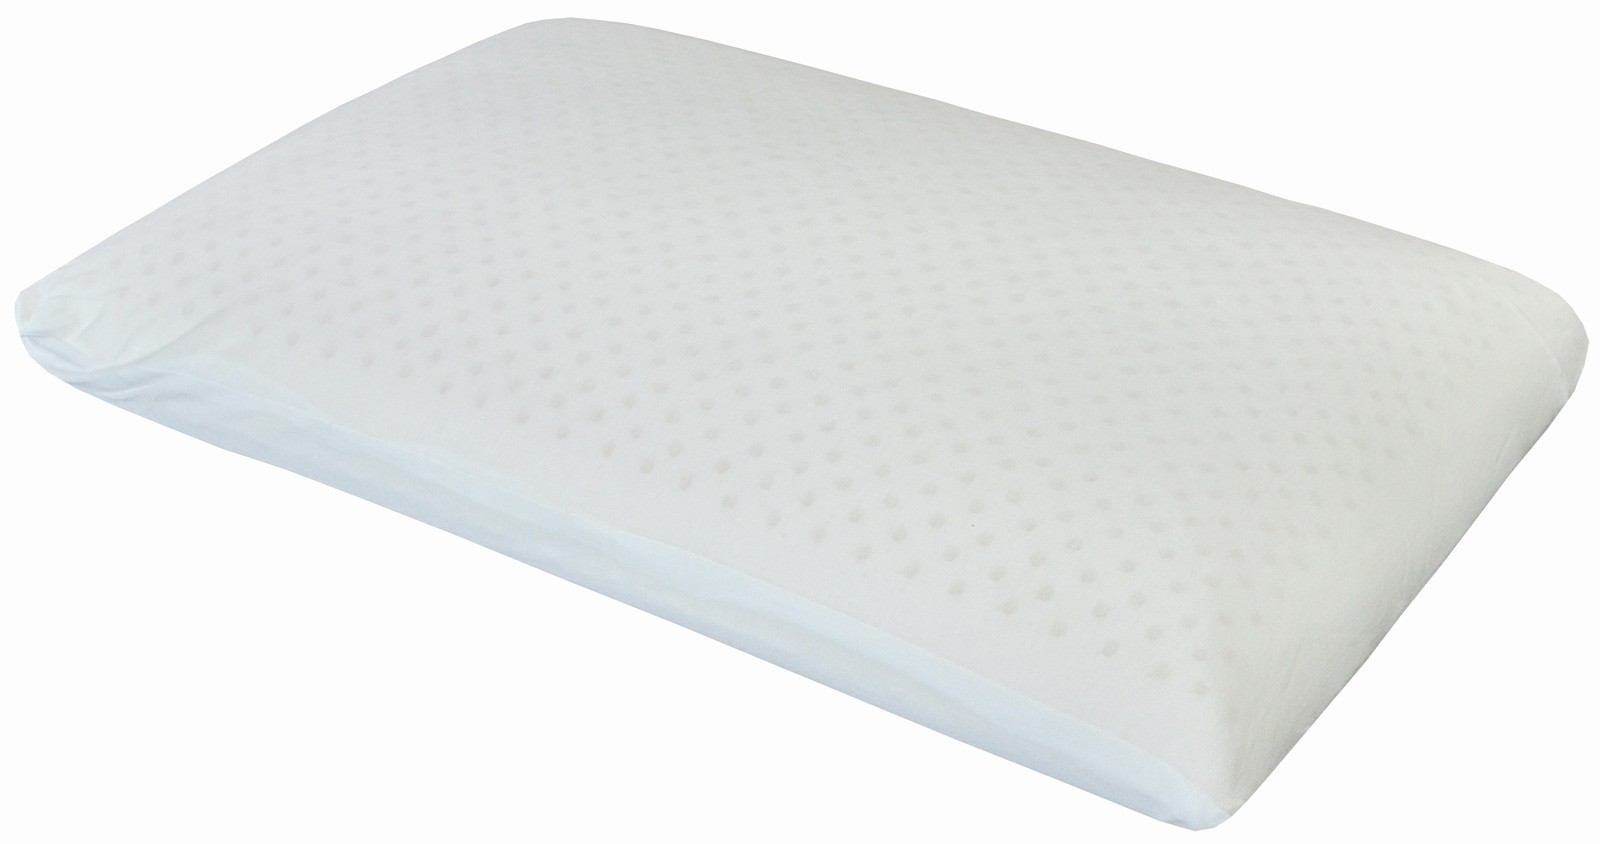 Standard latex pillow Queen Size Regular Shape 65 x 40 x 13 cm 